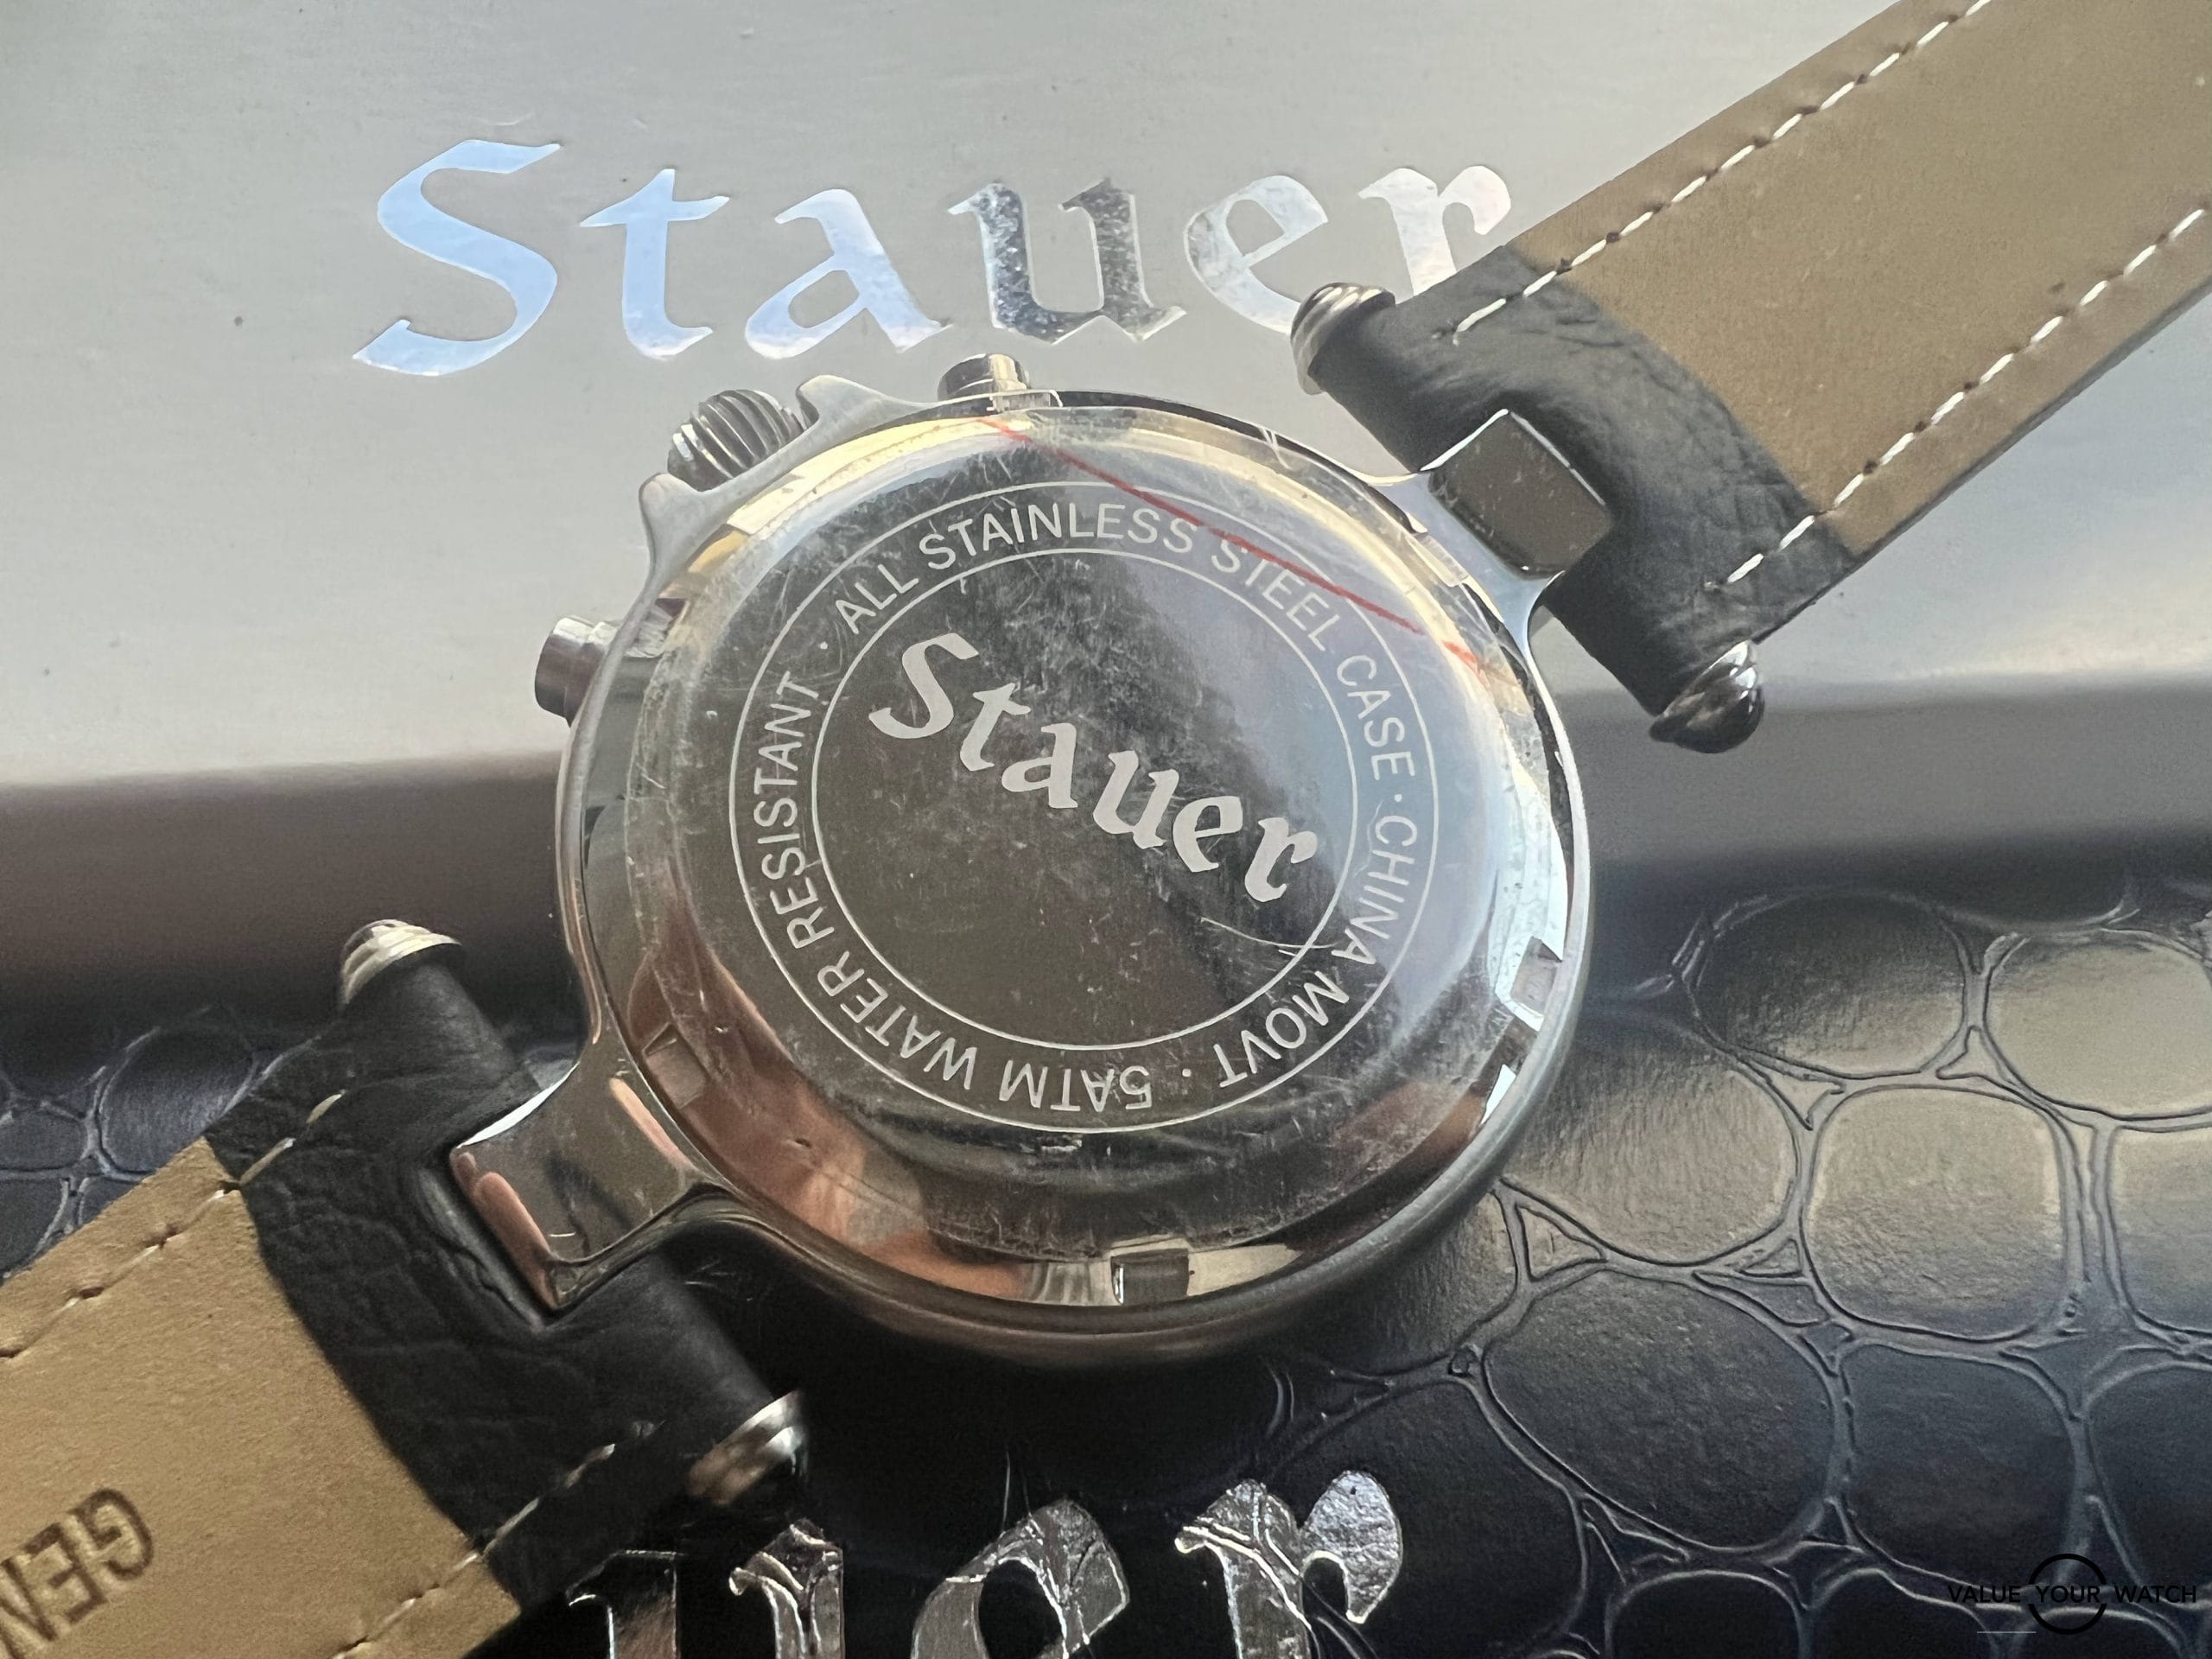 Stauer watch